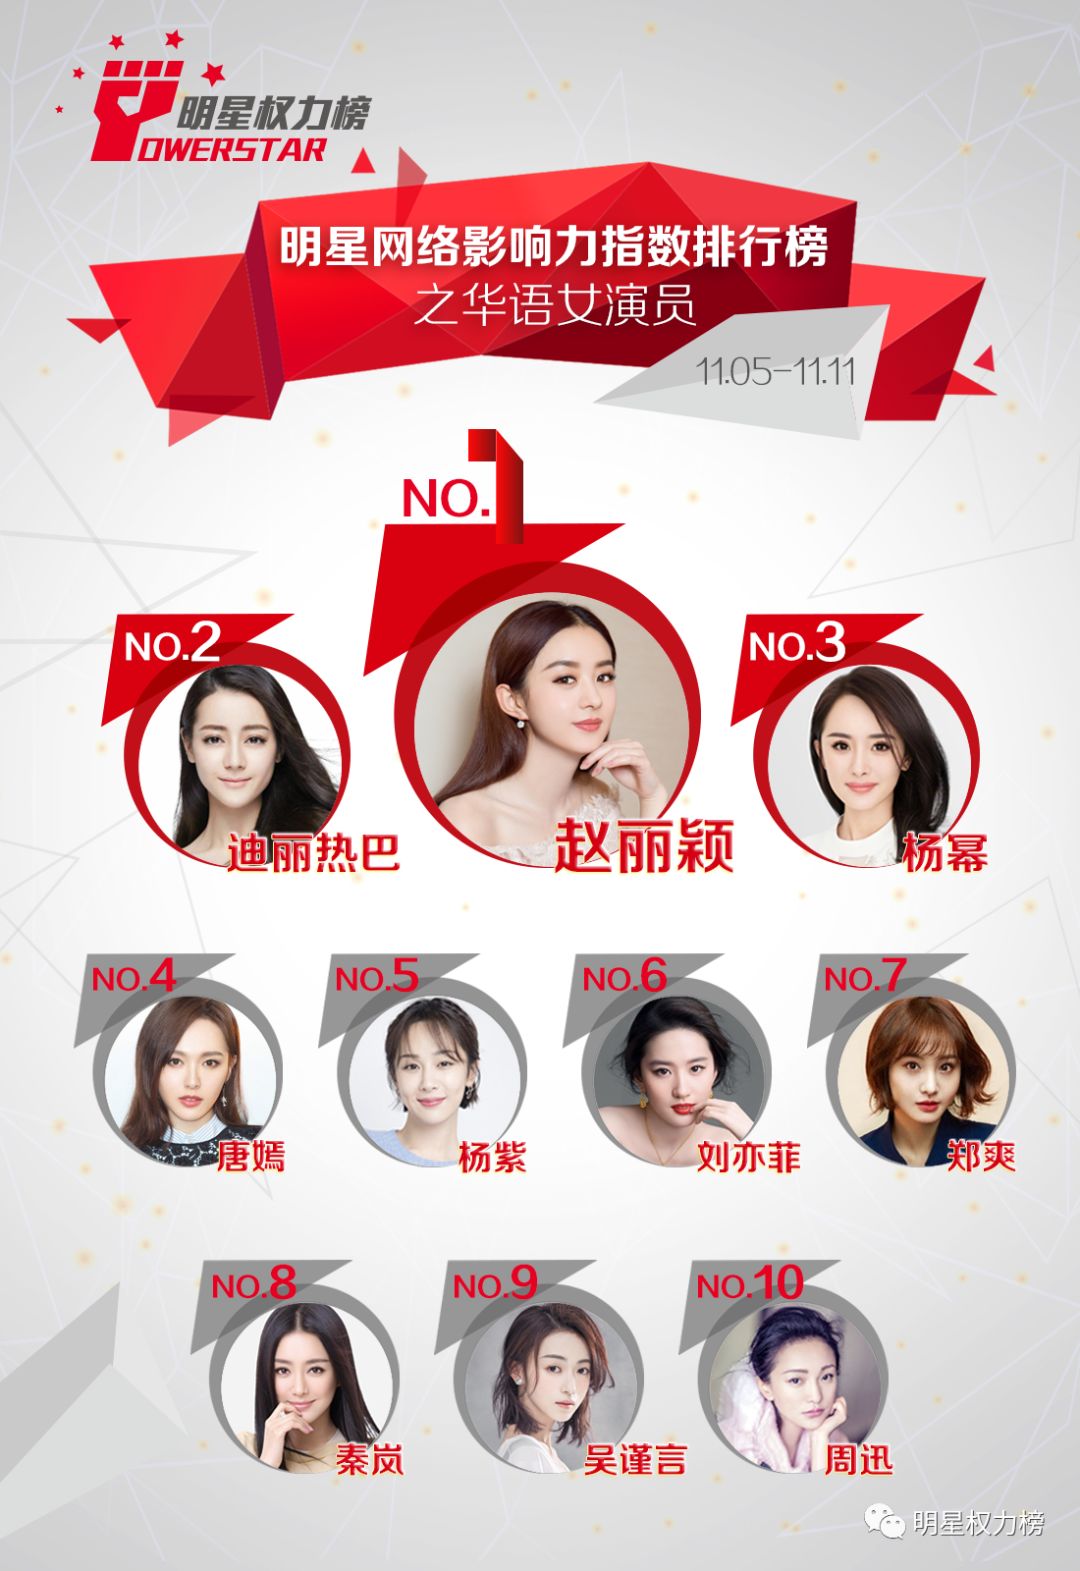 明星網路影響力指數排行榜第182期榜單之華語女演員Top10 娛樂 第1張